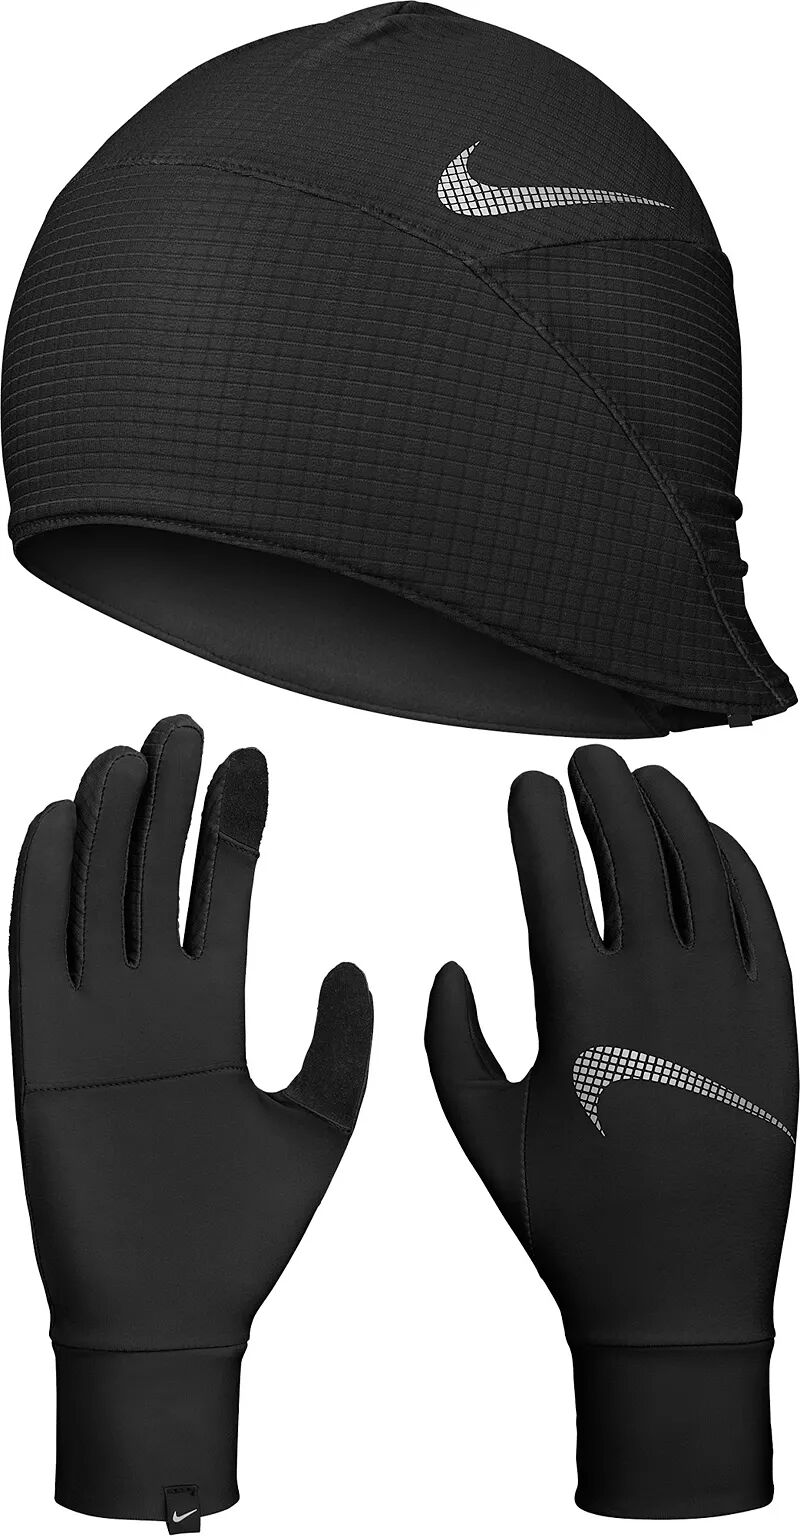 Женский комплект беговой шапки и перчаток Nike Essential, черный